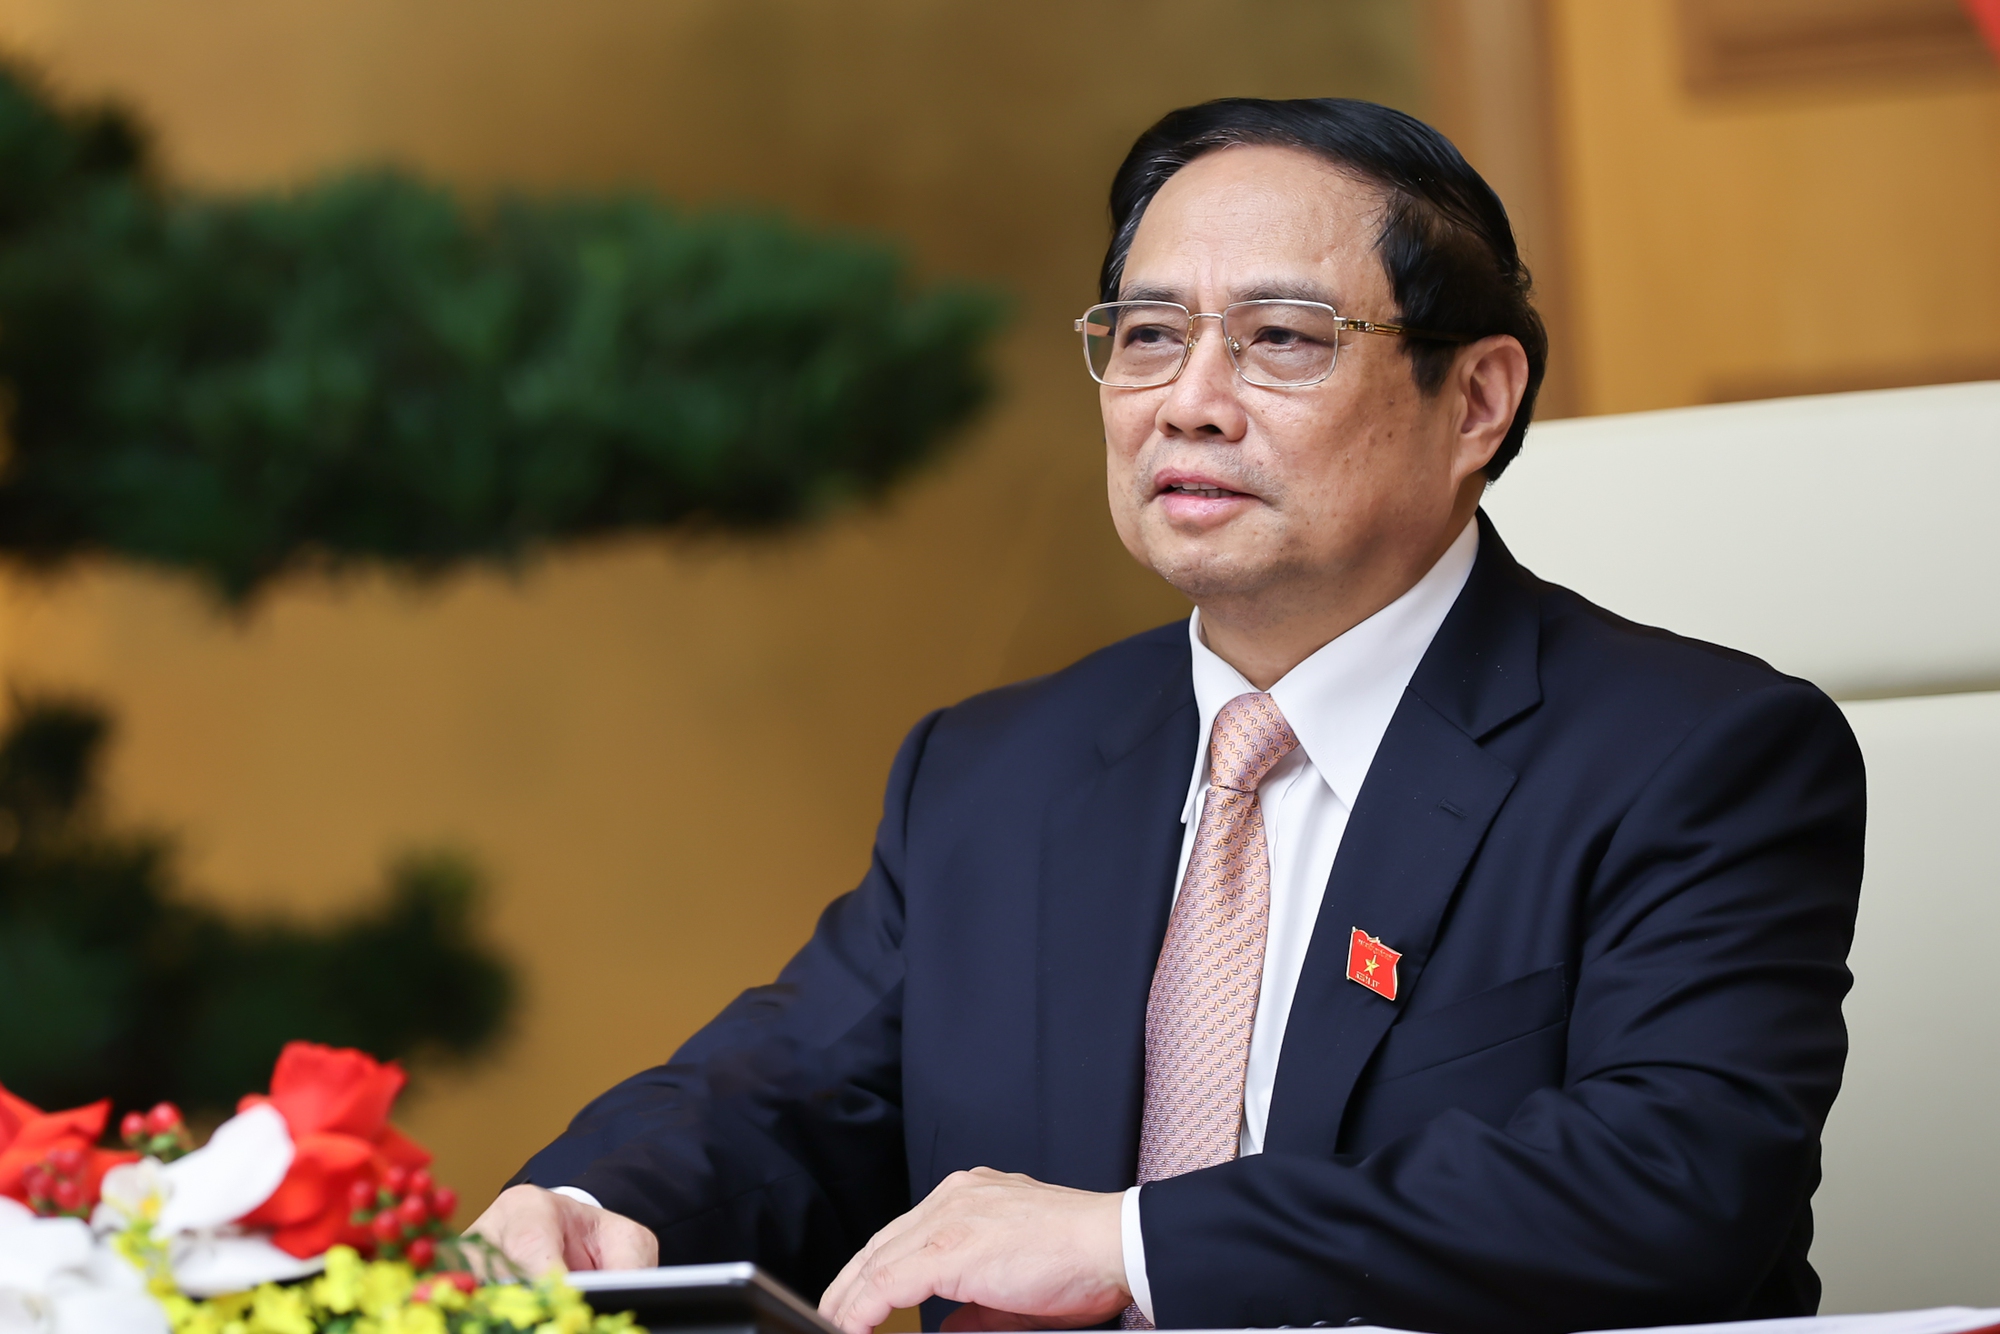 Thủ tướng Phạm Minh Chính đề nghị Đan Mạch đẩy mạnh đầu tư vào Việt Nam trong các lĩnh vực Đan Mạch có thế mạnh và phù hợp với các ưu tiên phát triển bền vững của Việt Nam - Ảnh: VGP/Nhật Bắc